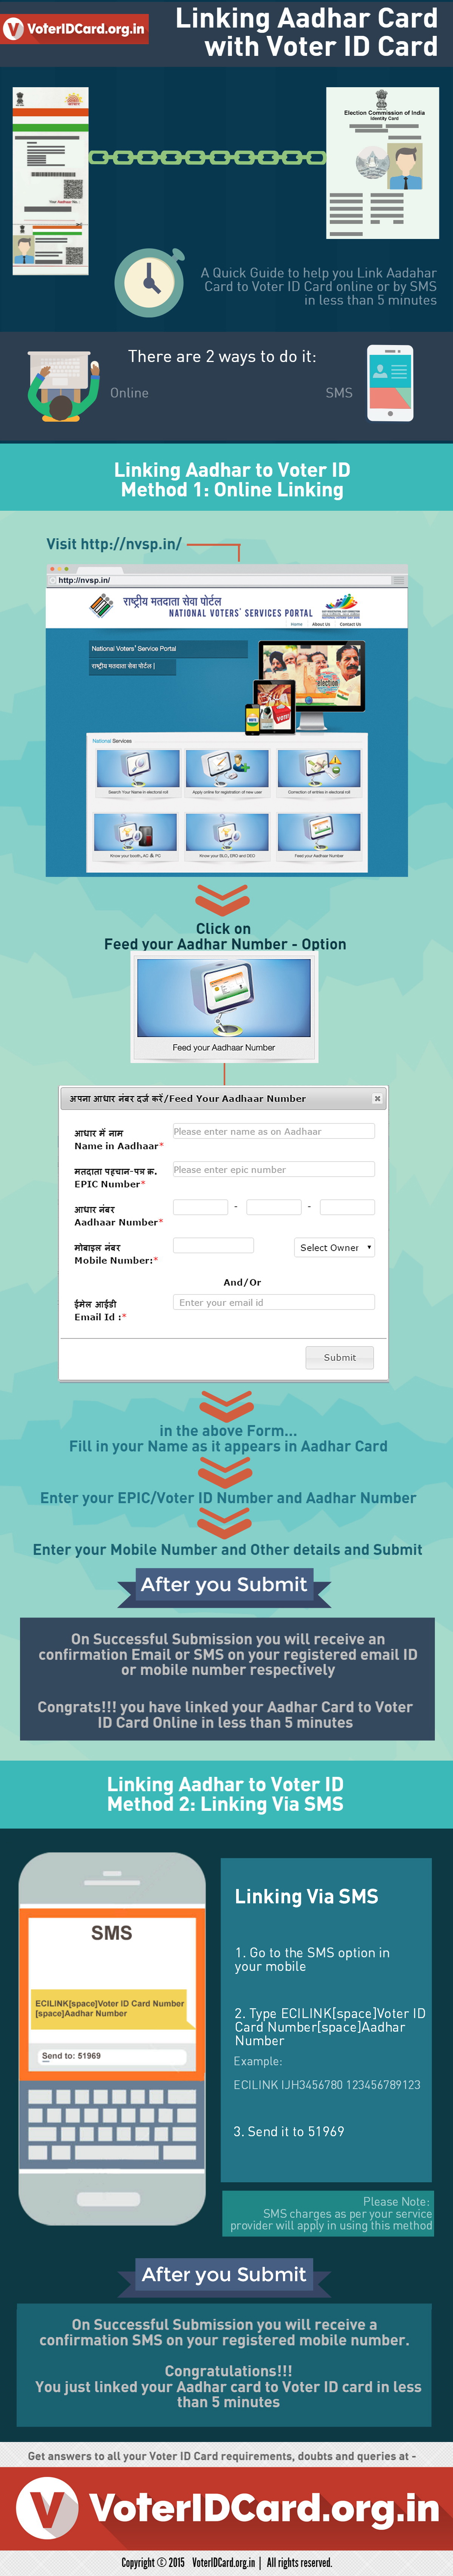 Link Aadhar Card to Voter ID card - Aadhar Seeding